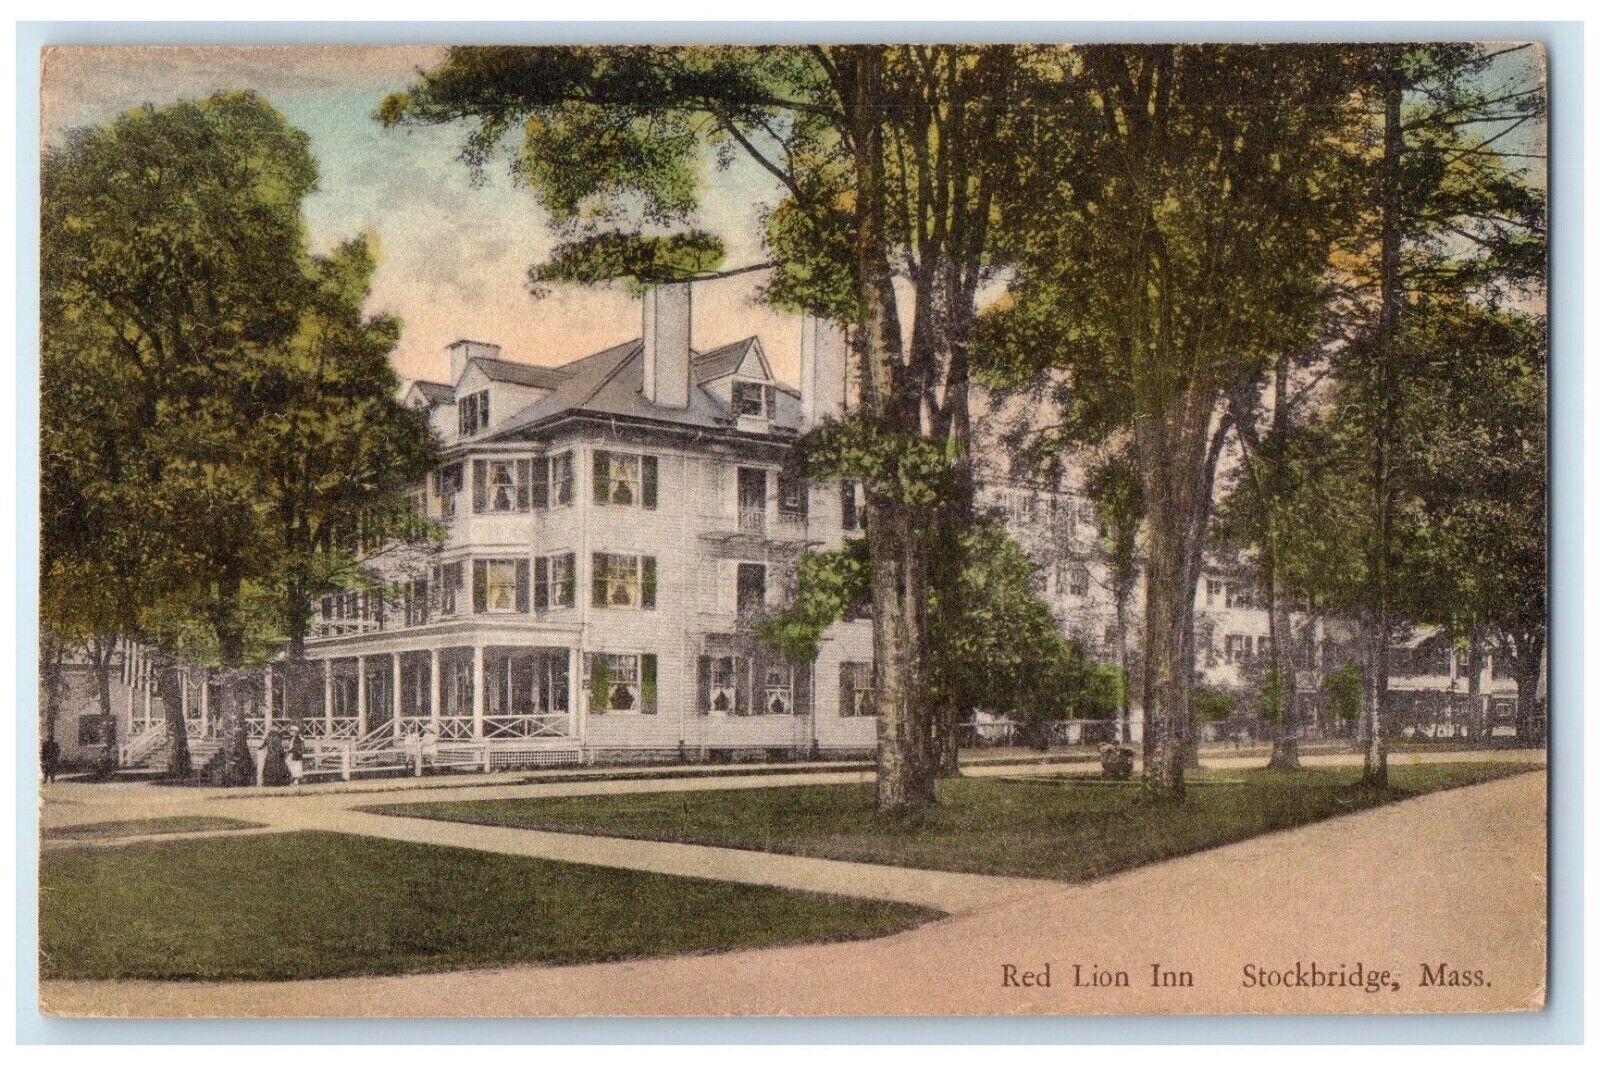 Red Lion Inn Hotel Building Stockbridge Massachusetts MA Handcolored Postcard